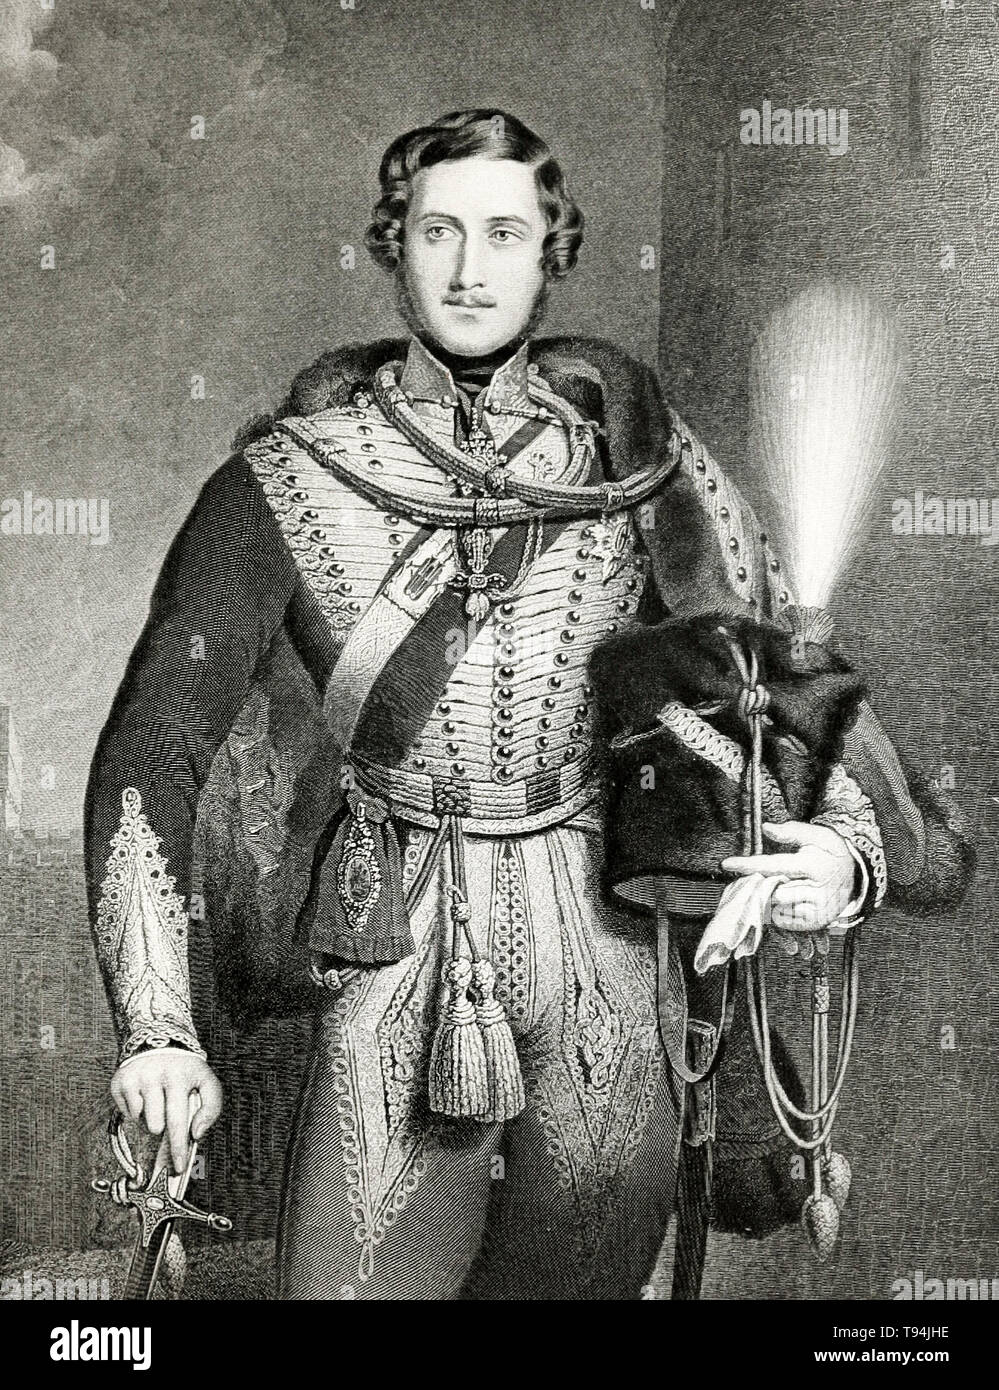 Prince Albert, in uniforme militare, ritratto incisione, 1900 Foto Stock